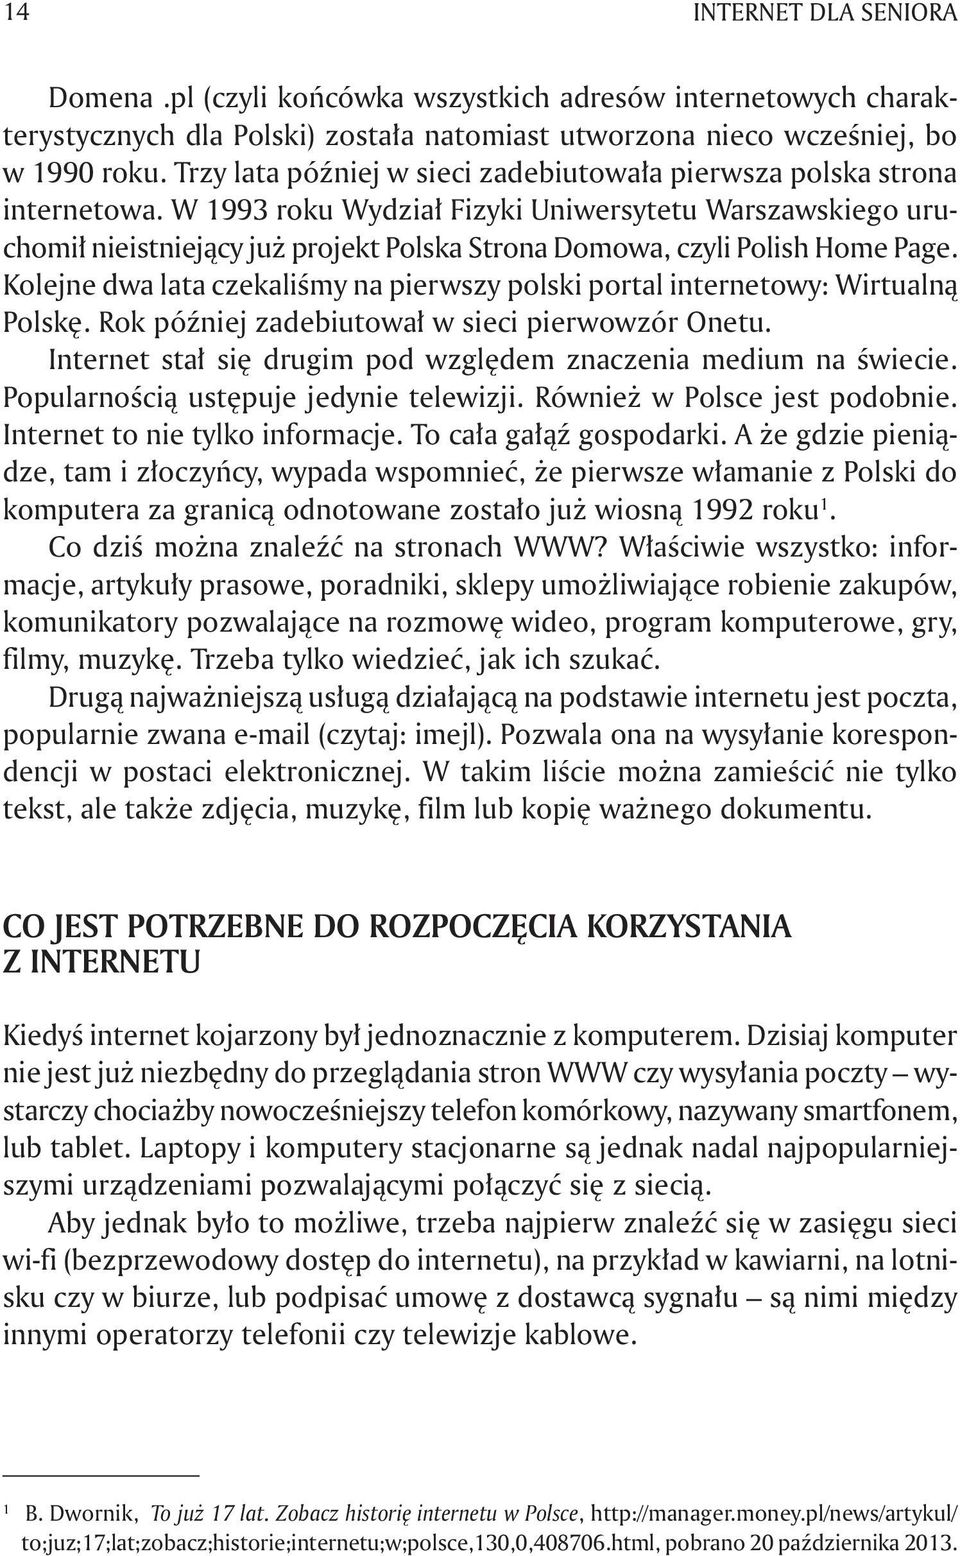 W 1993 roku Wydział Fizyki Uniwersytetu Warszawskiego uruchomił nieistniejący już projekt Polska Strona Domowa, czyli Polish Home Page.